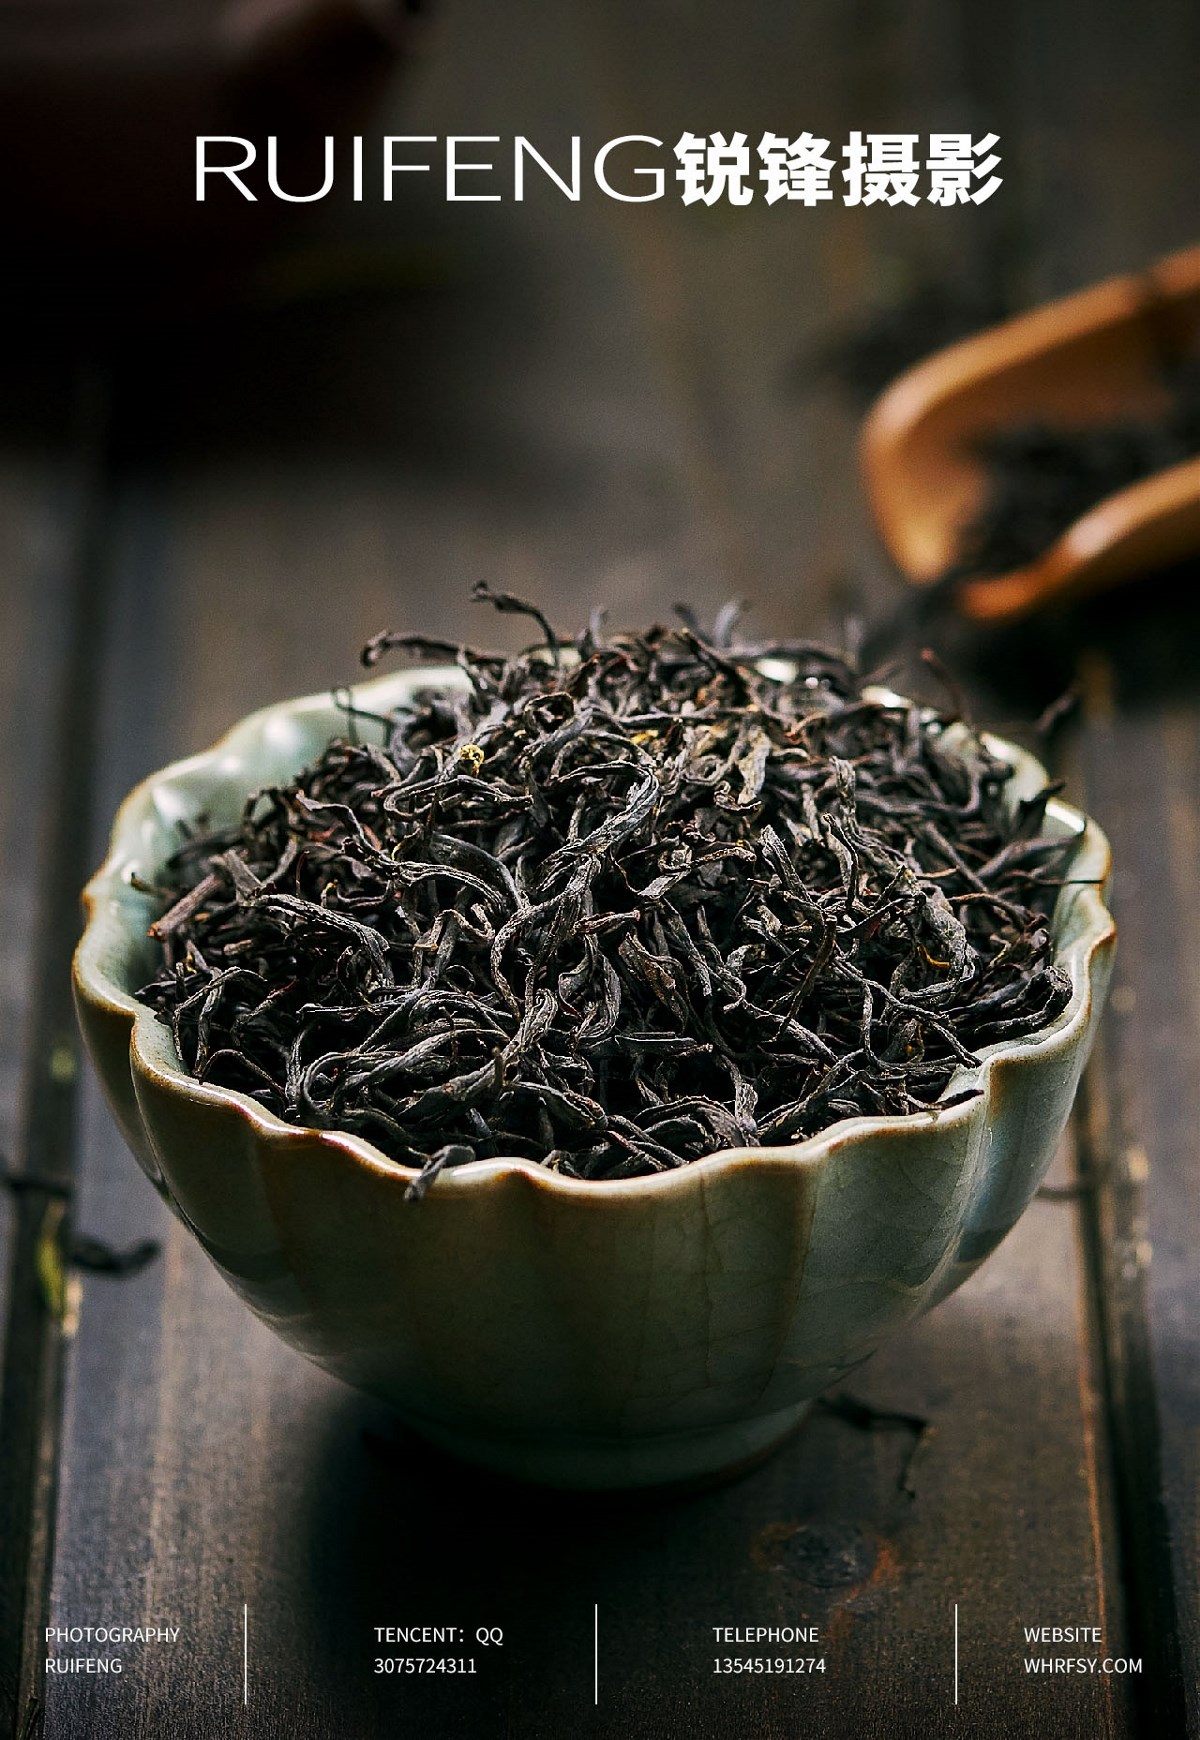 武汉茶叶摄影|茶叶拍摄|红茶绿茶|茶叶详情图|RUIFENG锐锋摄影